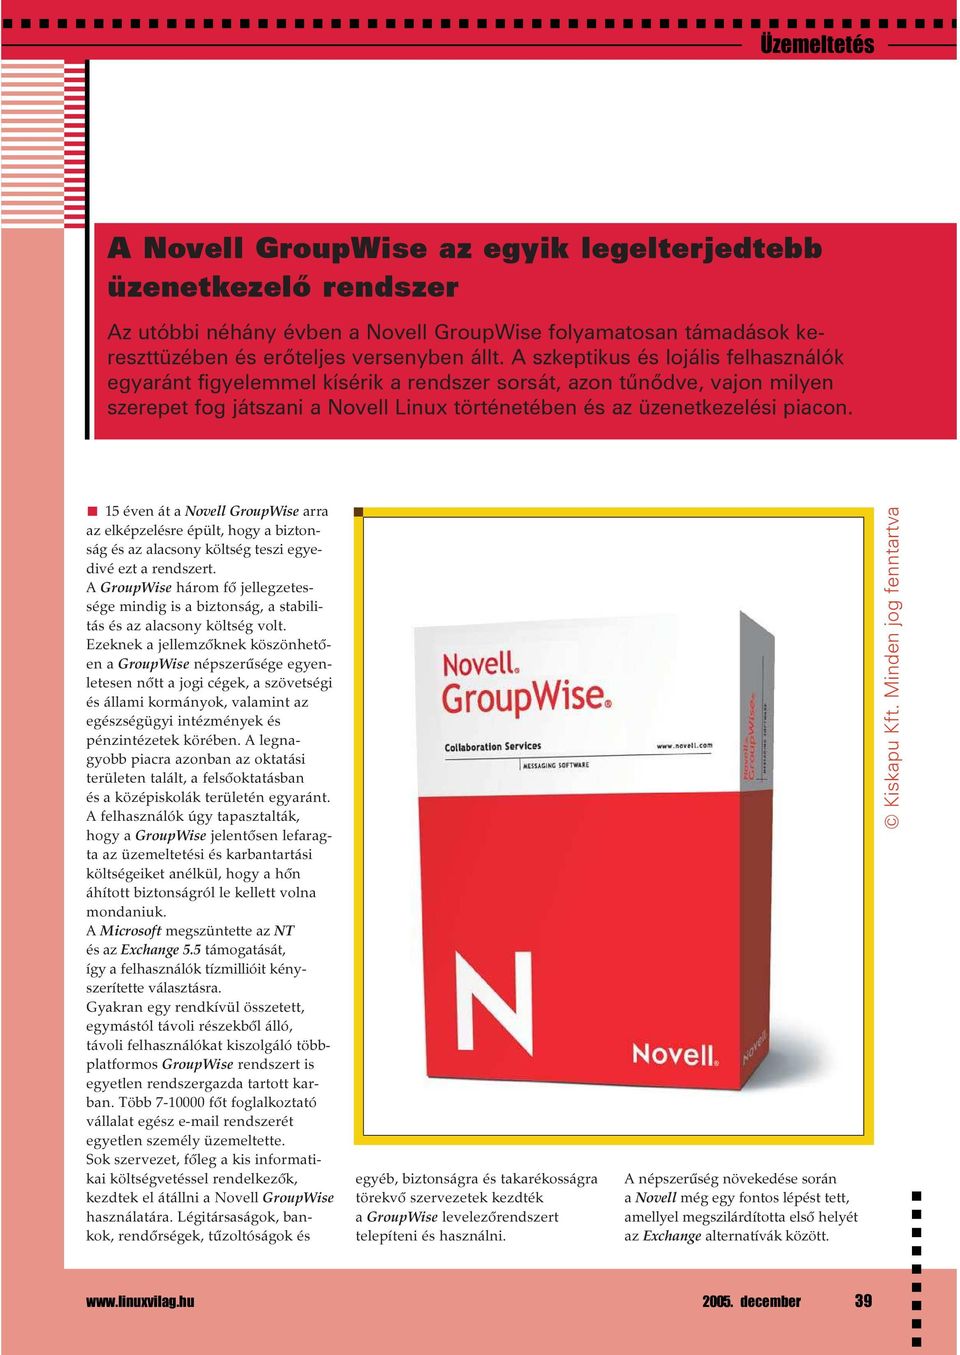 15 éven át a Novell GroupWise arra az elképzelésre épült, hogy a biztonság és az alacsony költség teszi egyedivé ezt a rendszert.